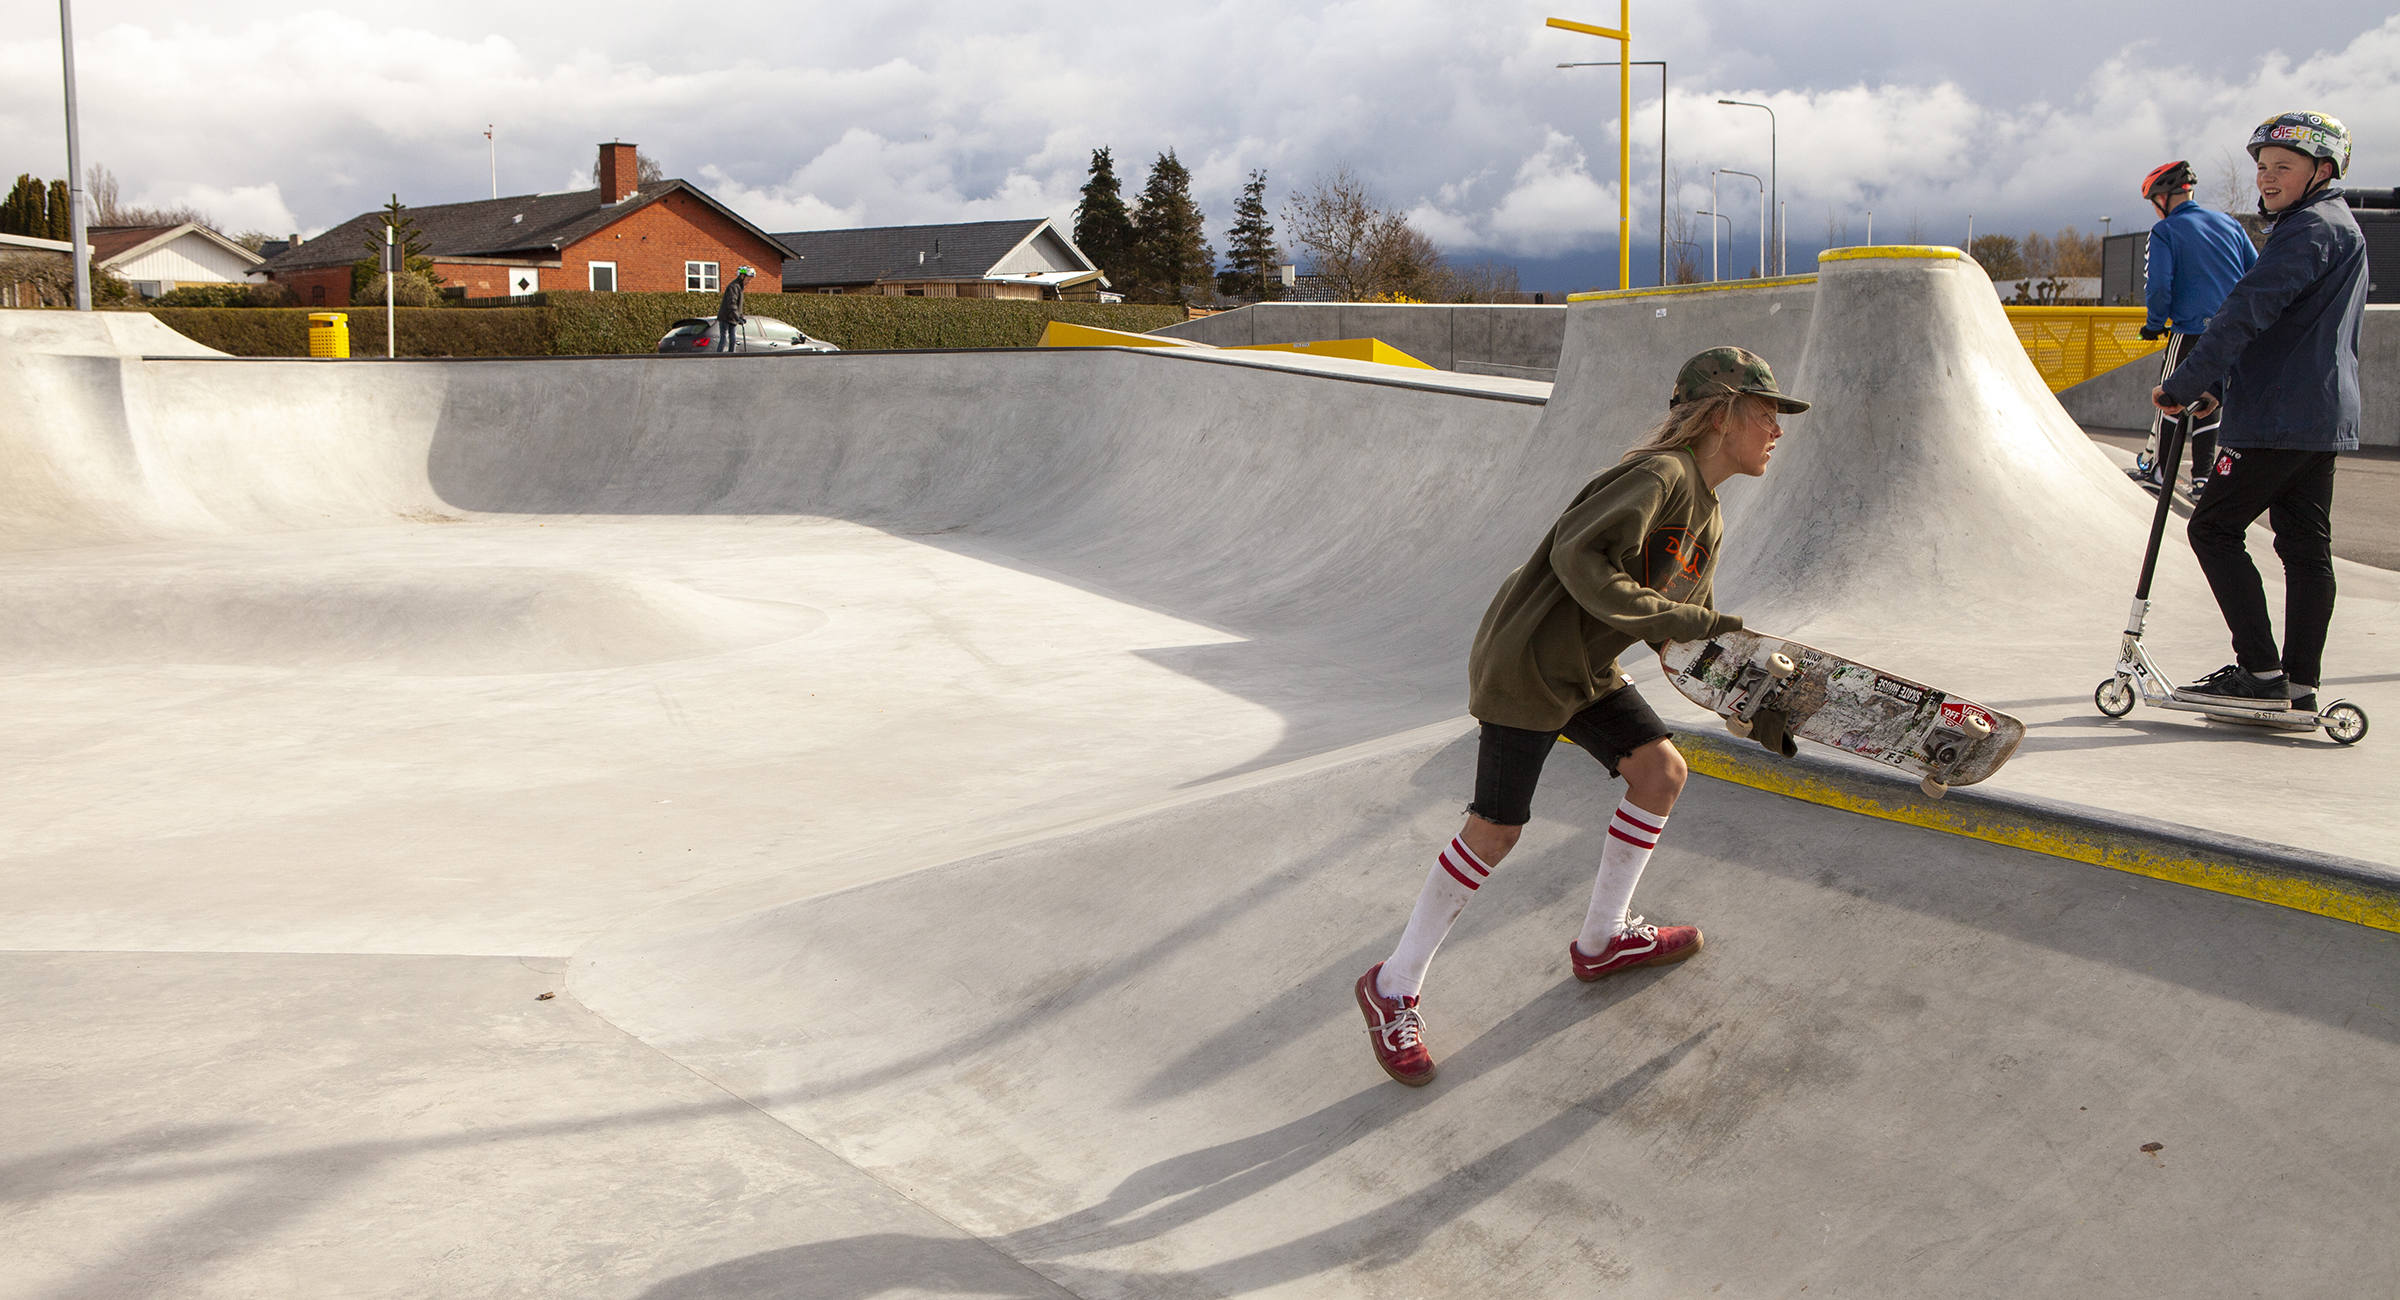 En skateboarder og to drenge på løbehjul bruger en skatepark i beton i Munkebo